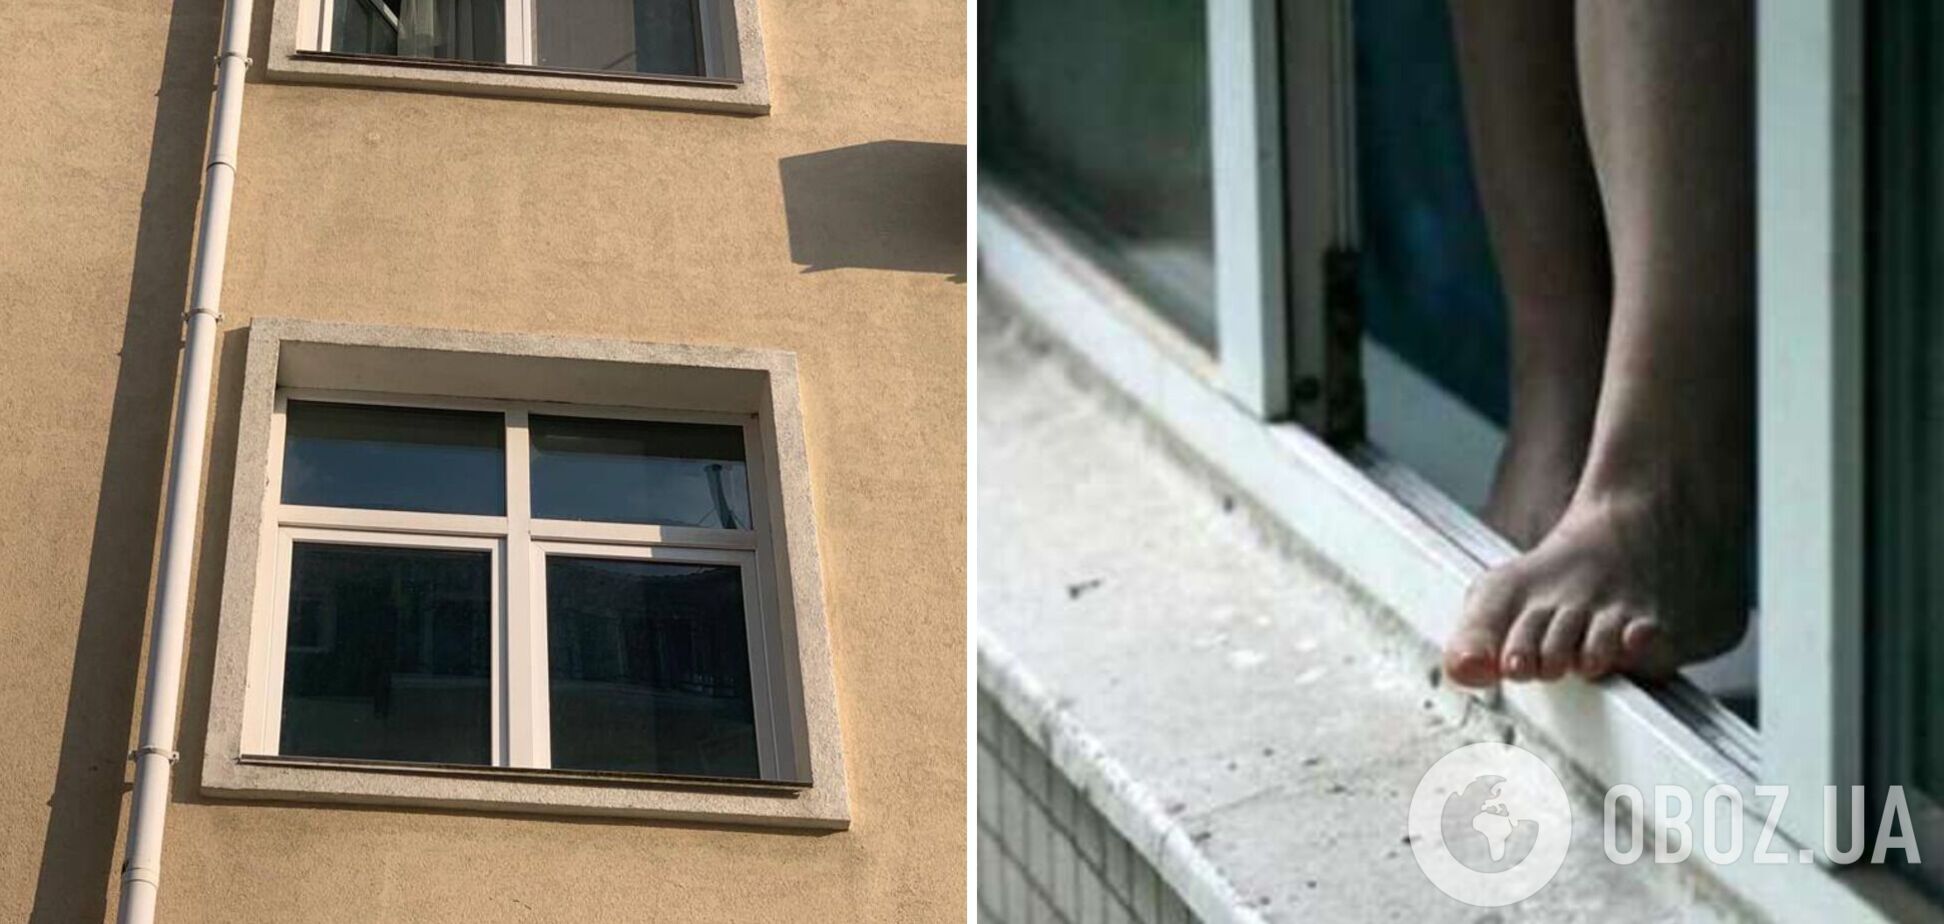 В пригороде Киева из окна третьего этажа выпала четырехлетняя девочка: все подробности. Фото